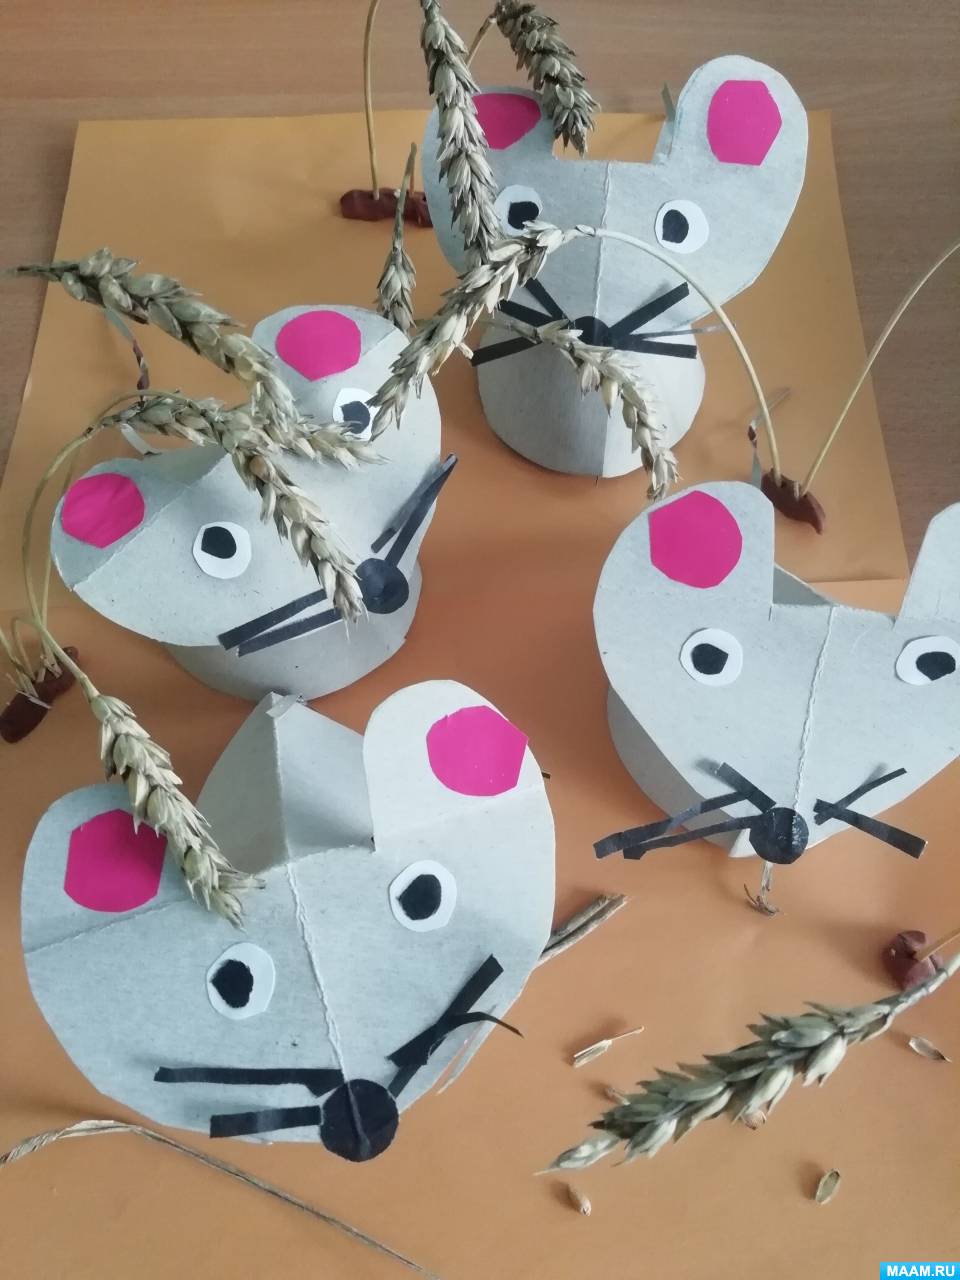 Детский Мастер-класс по конструированию из бумаги «Полевая мышка» ко Дню мышки на МAAM